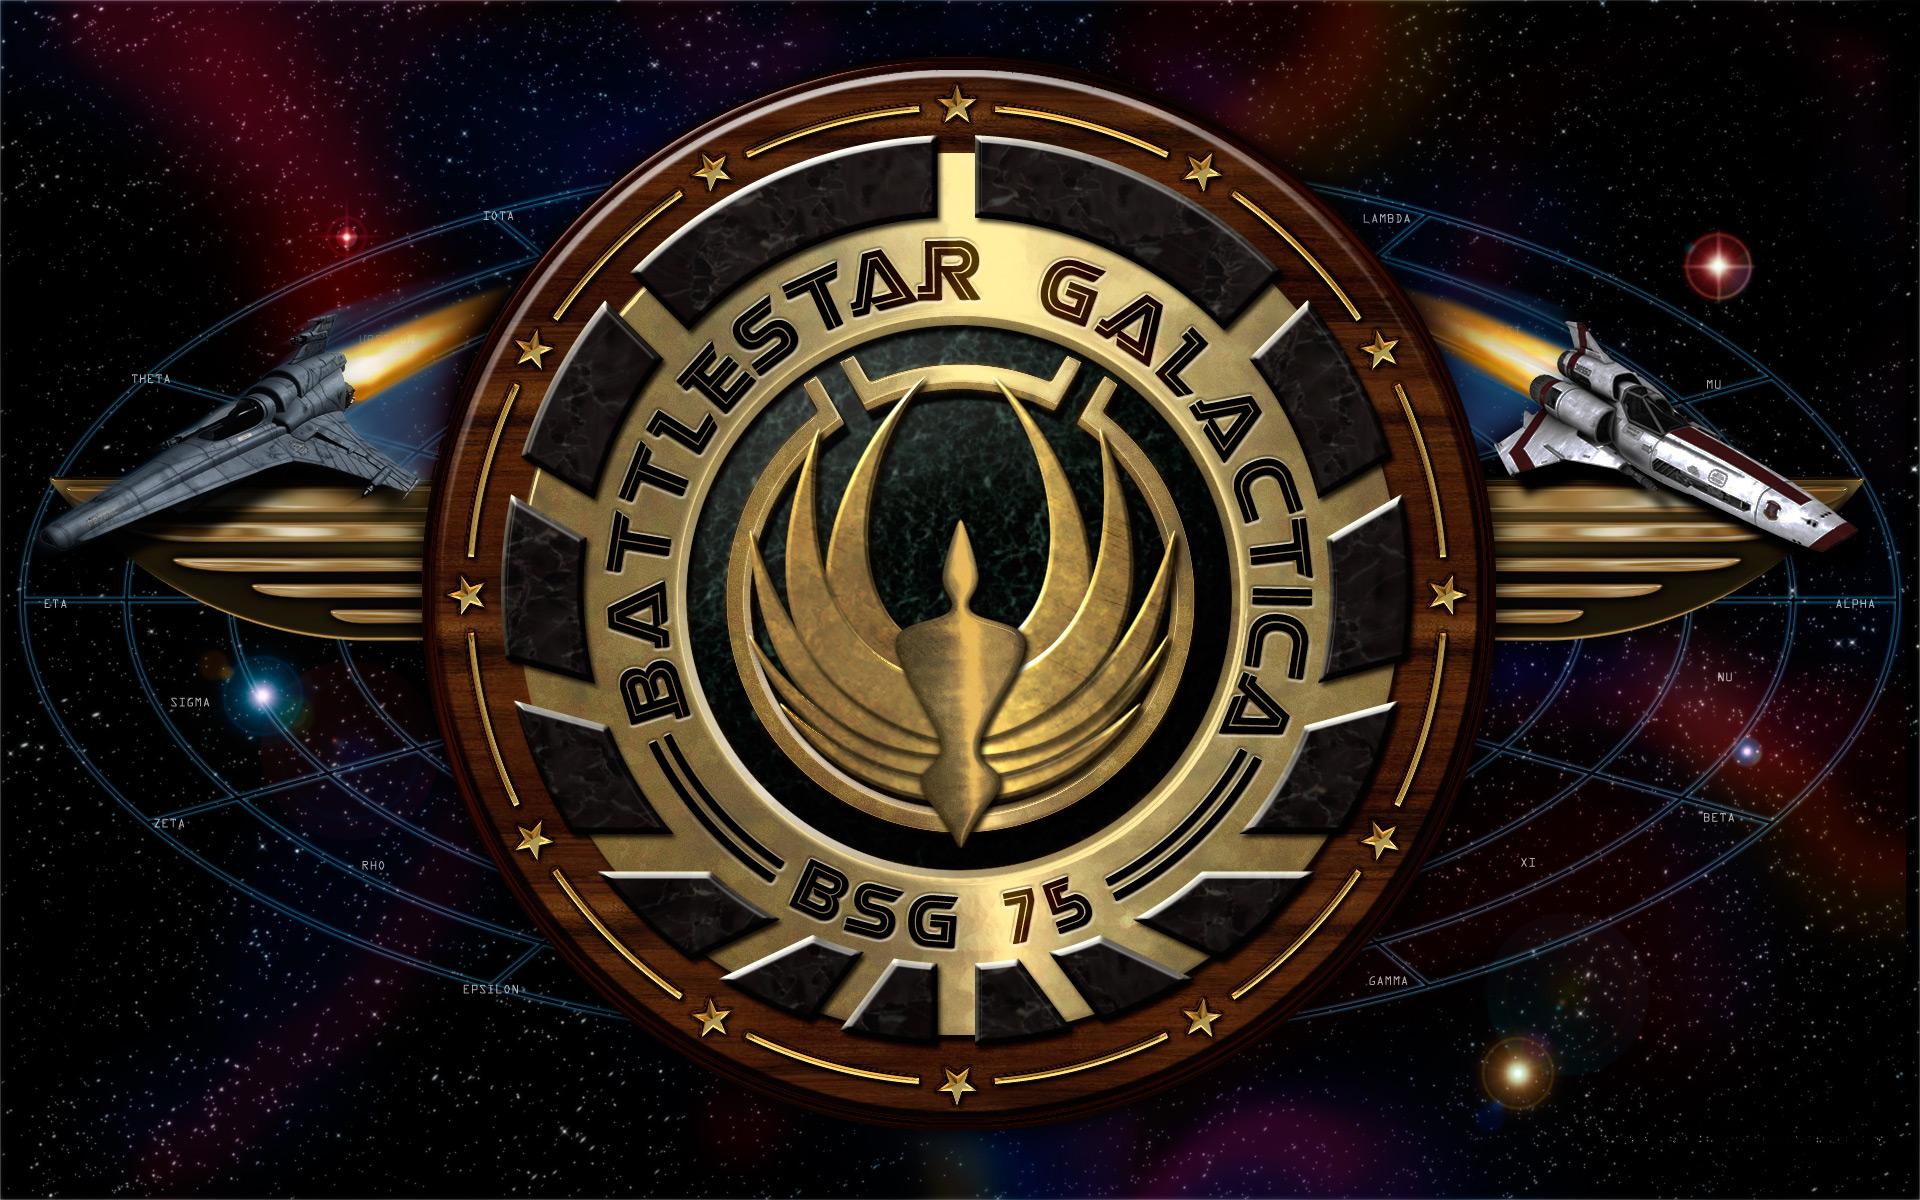 TV Show Battlestar Galactica 2003 1920x1200